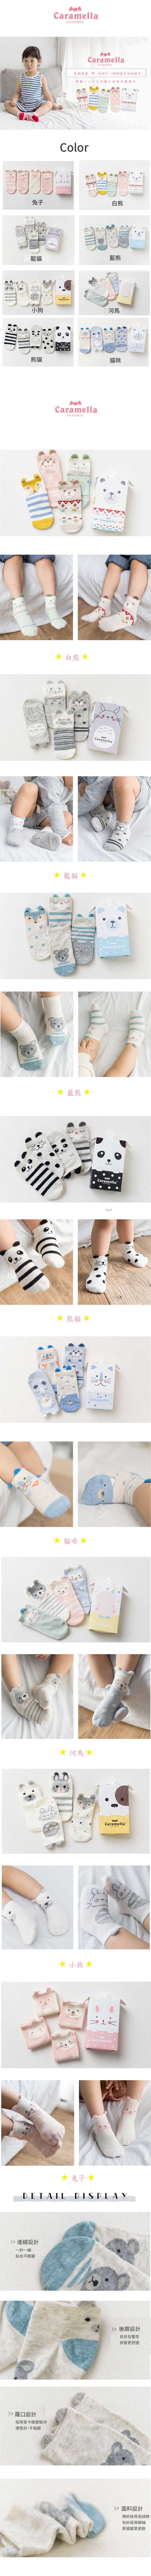 寶寶襪 新生兒襪 學步襪 四入組 【JB0031】日本外貿寶寶盒裝卡通動物公仔襪 居家鞋